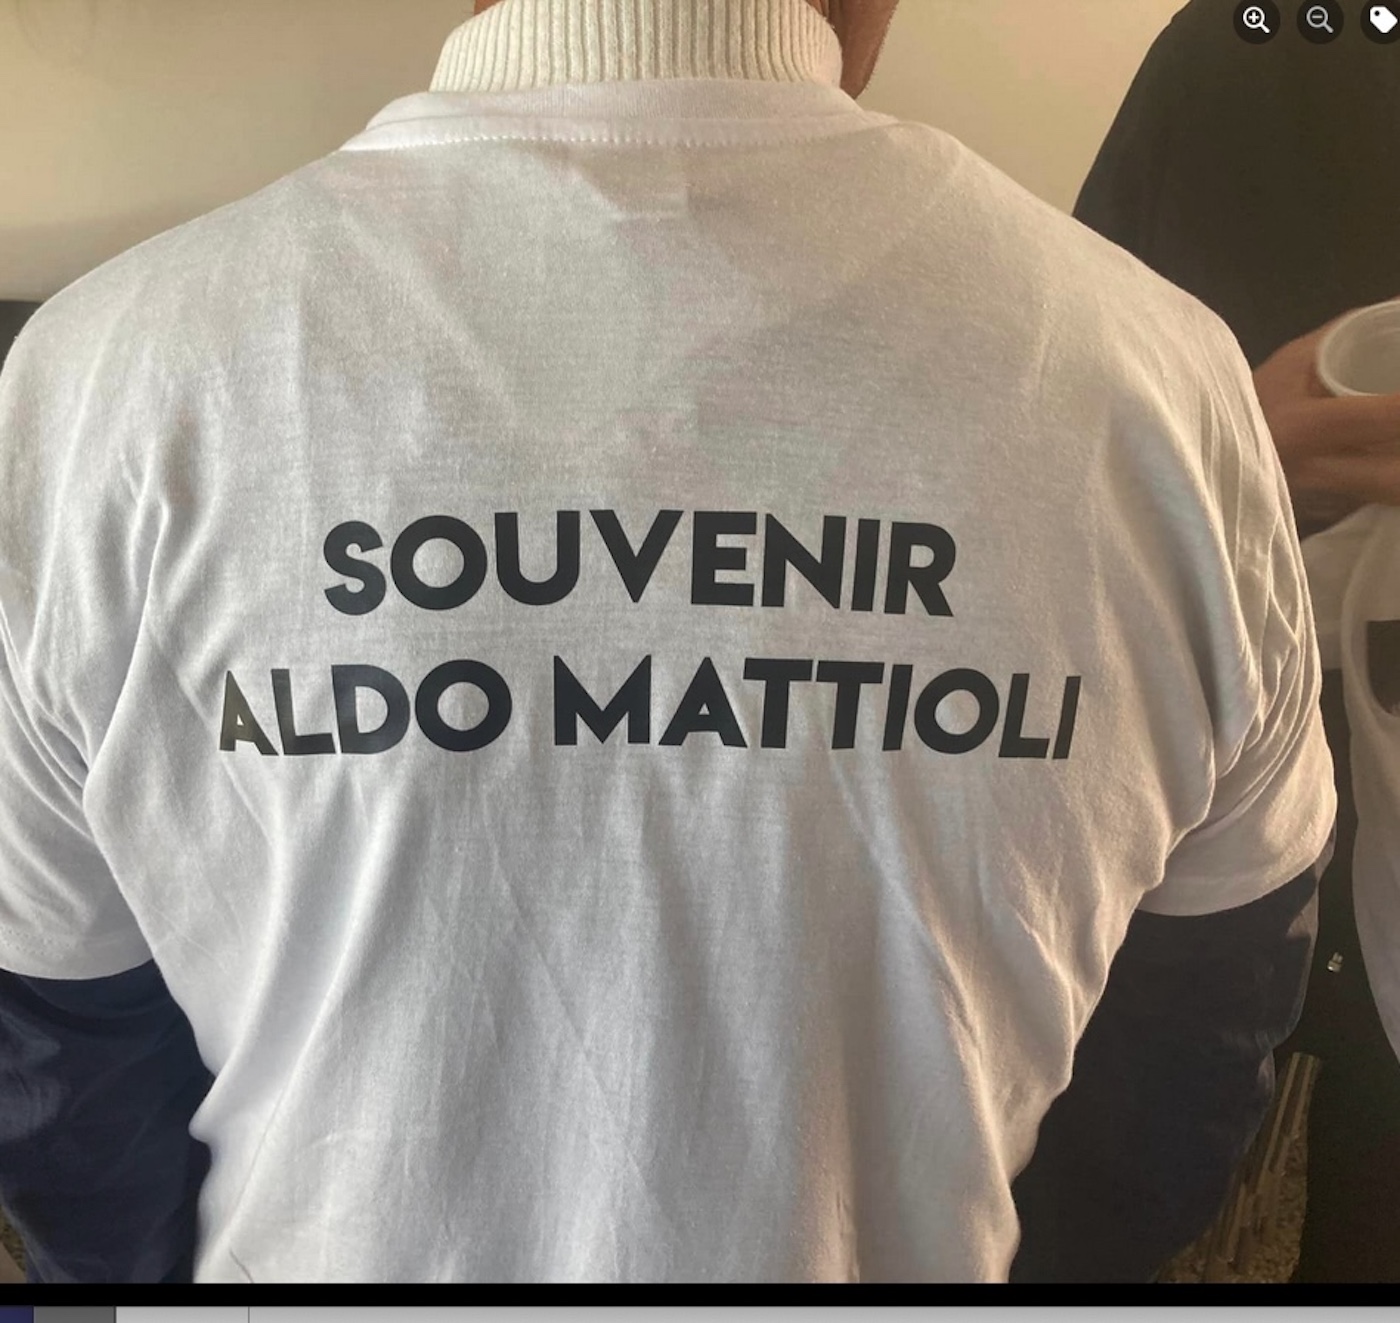 souvenir Aldo